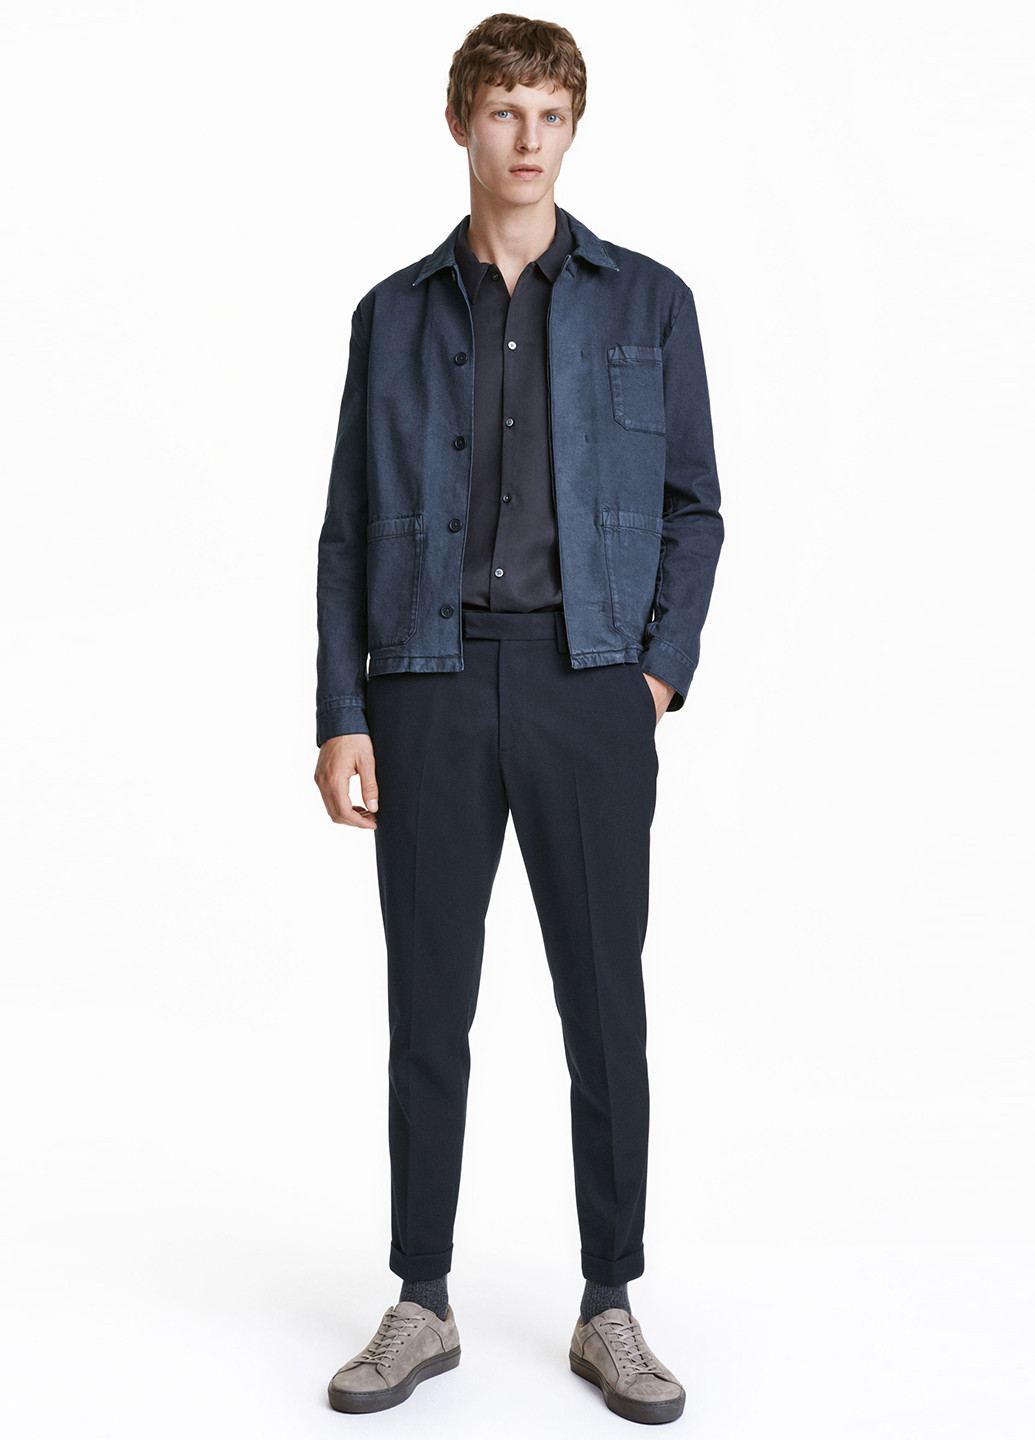 Темно-синие кэжуал демисезонные со средней талией брюки H&M